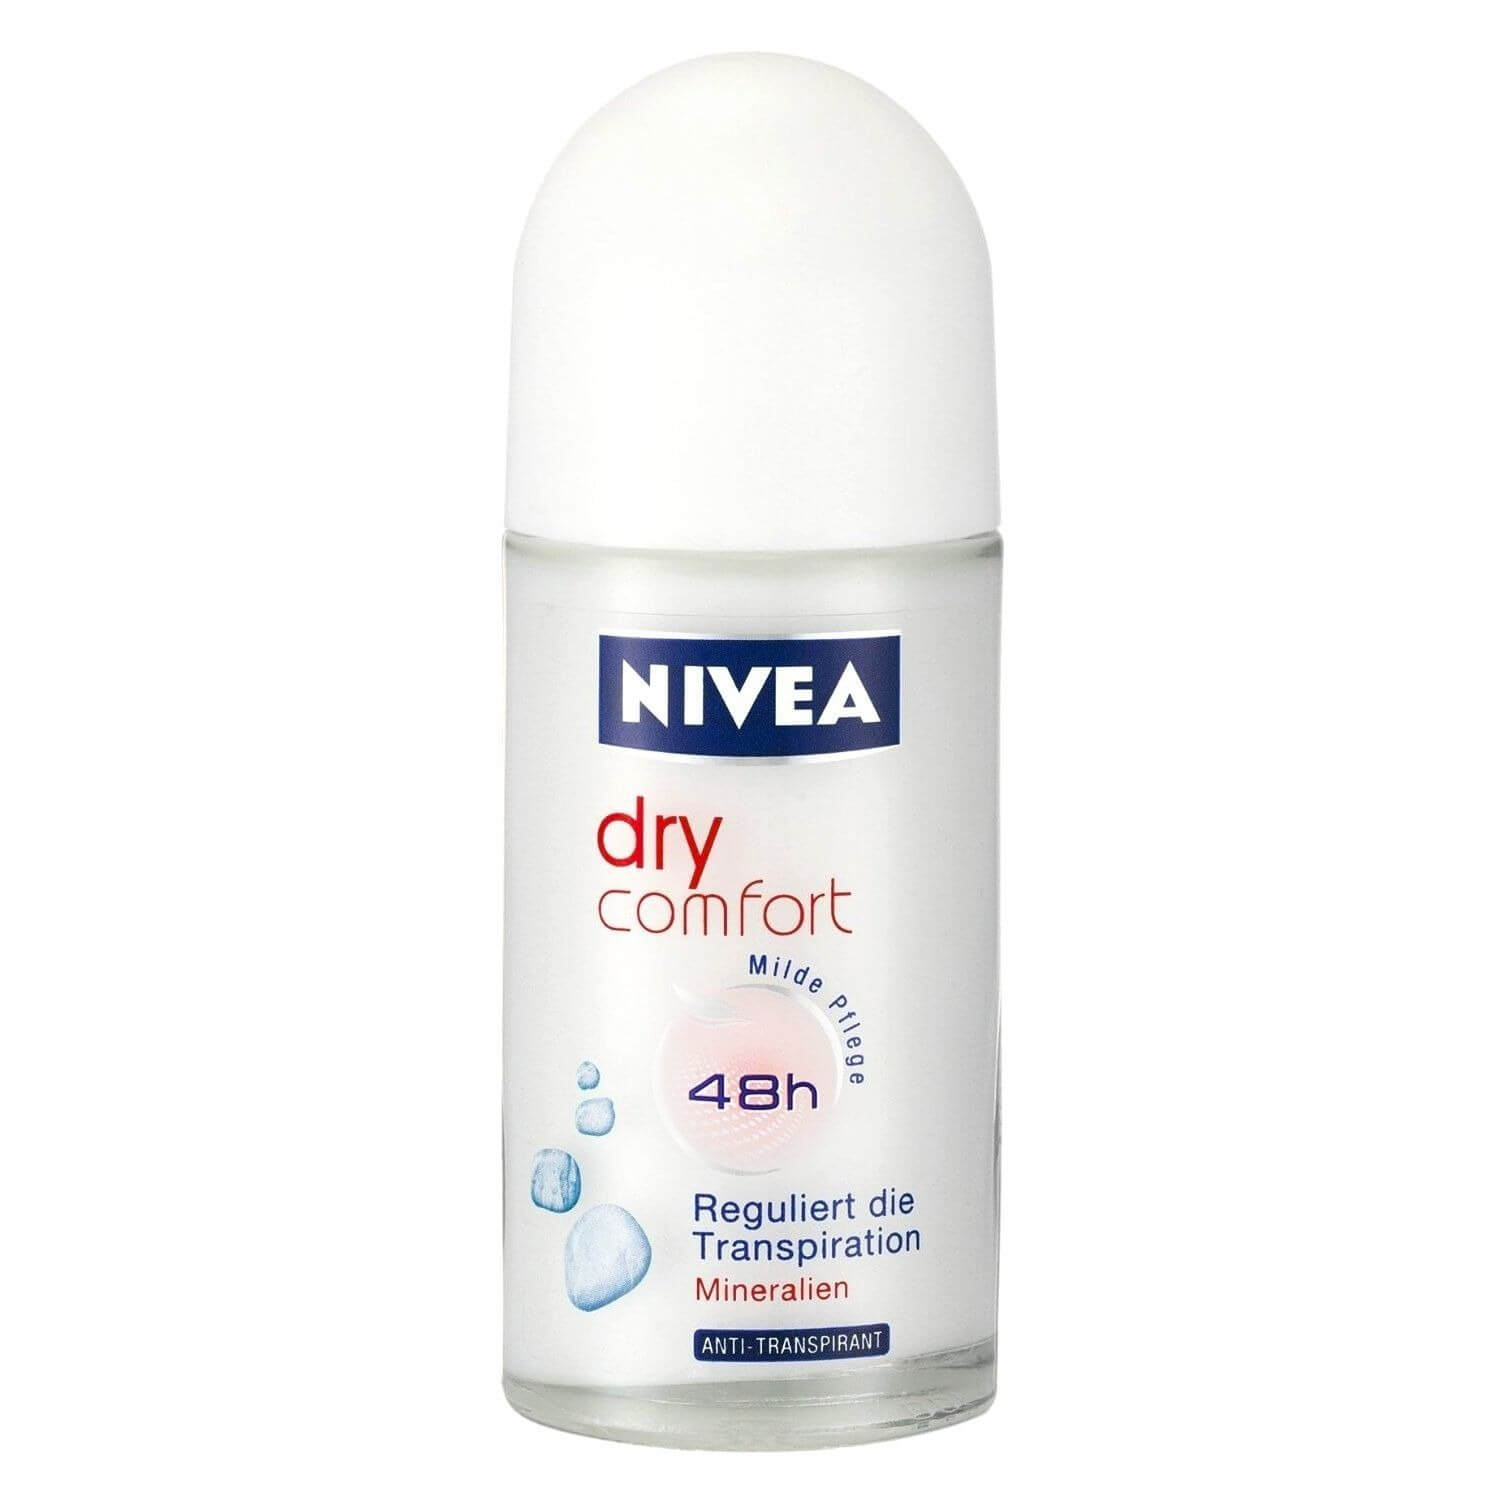 1591881402nivea-dry-comfort-deodorant-48hr-roll-on-for-women-50ml.jpg